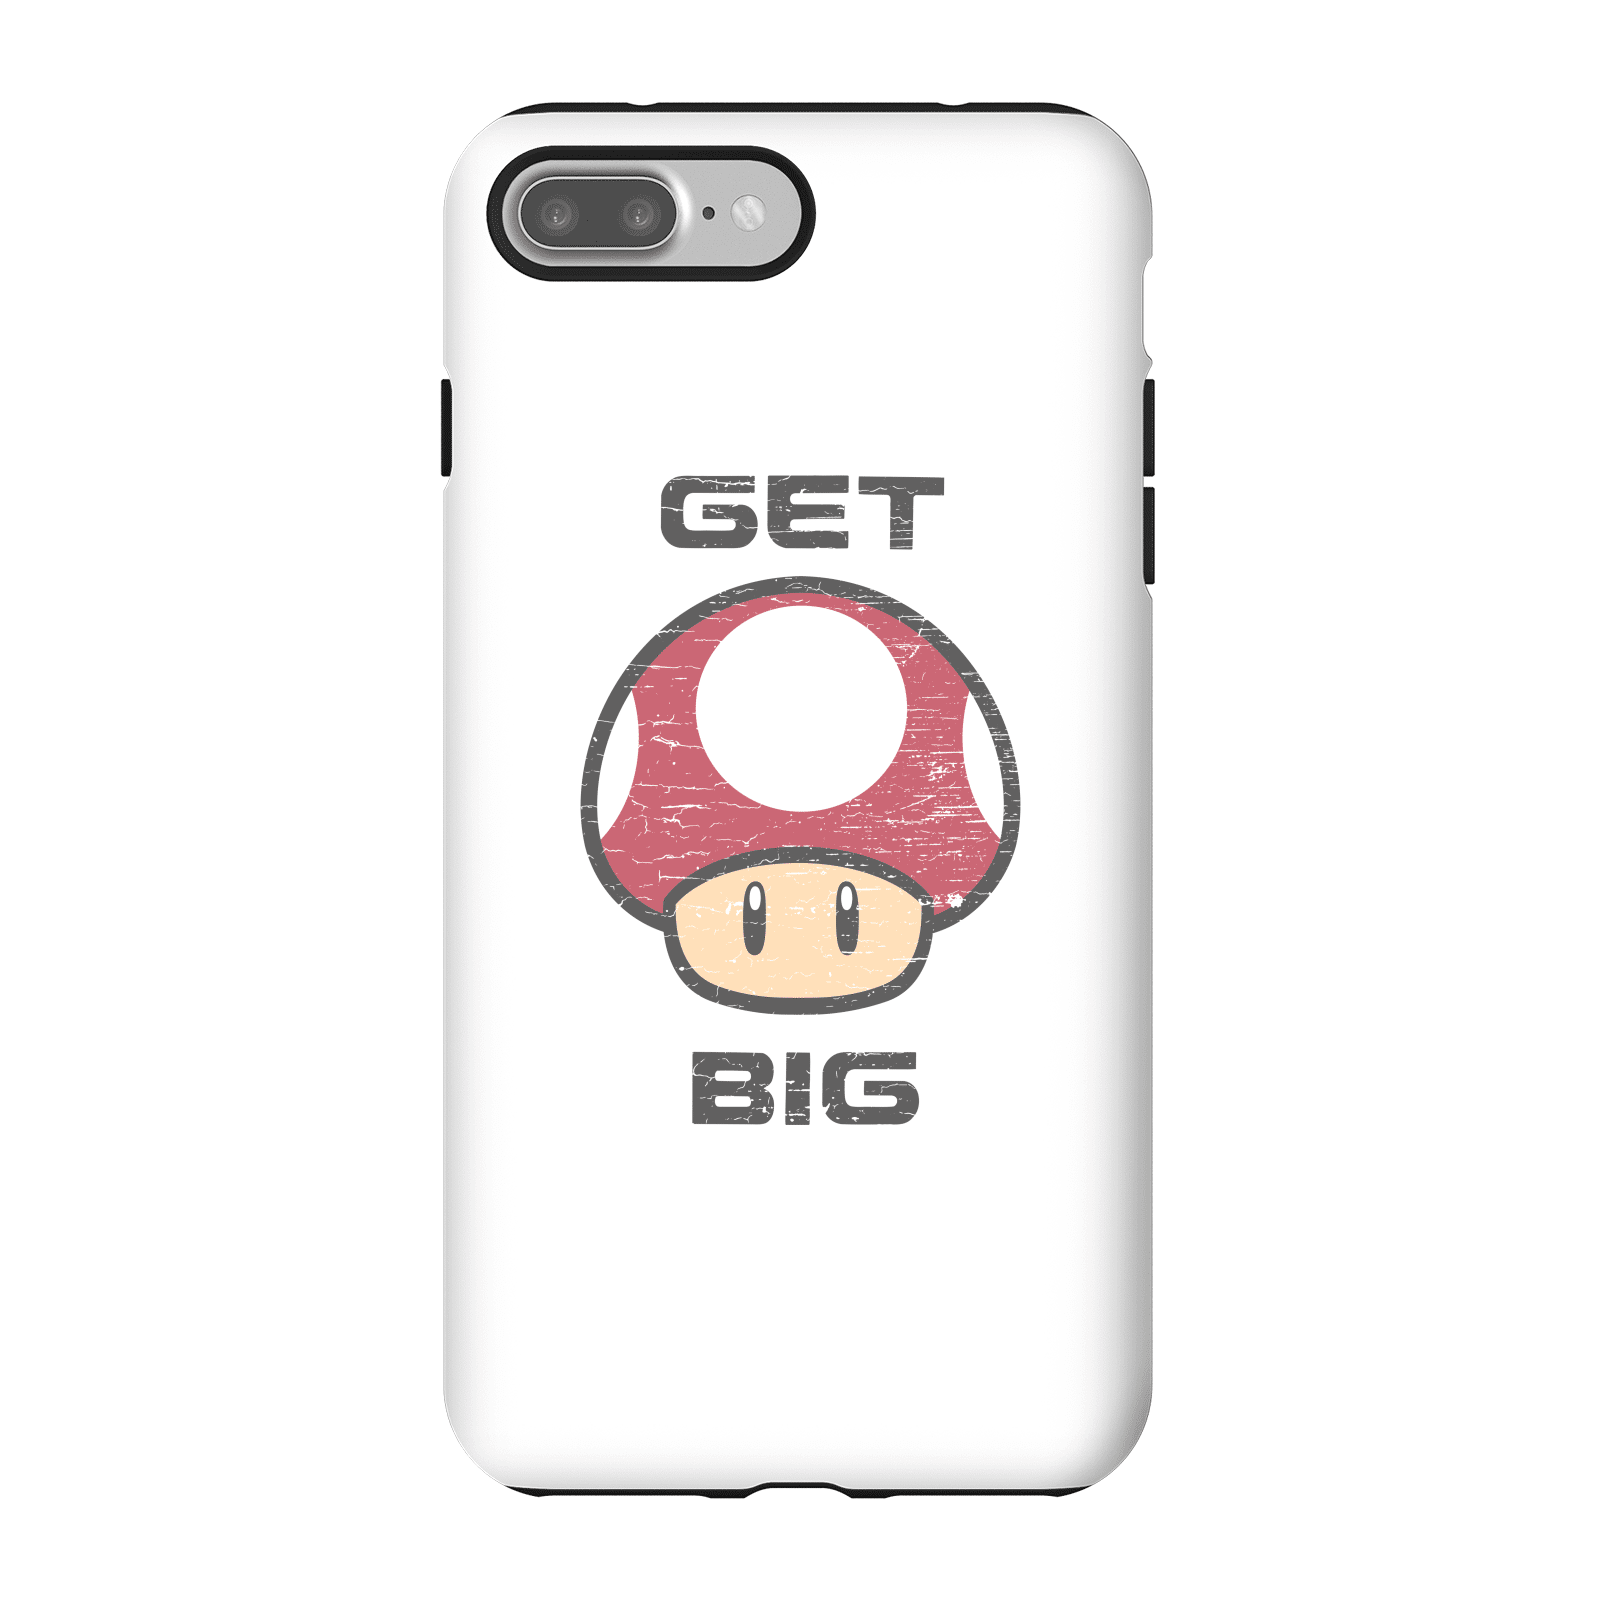 Nintendo Super Mario Get Big Mushroom Phone Case - iPhone 7 Plus - Tough Case - Matte